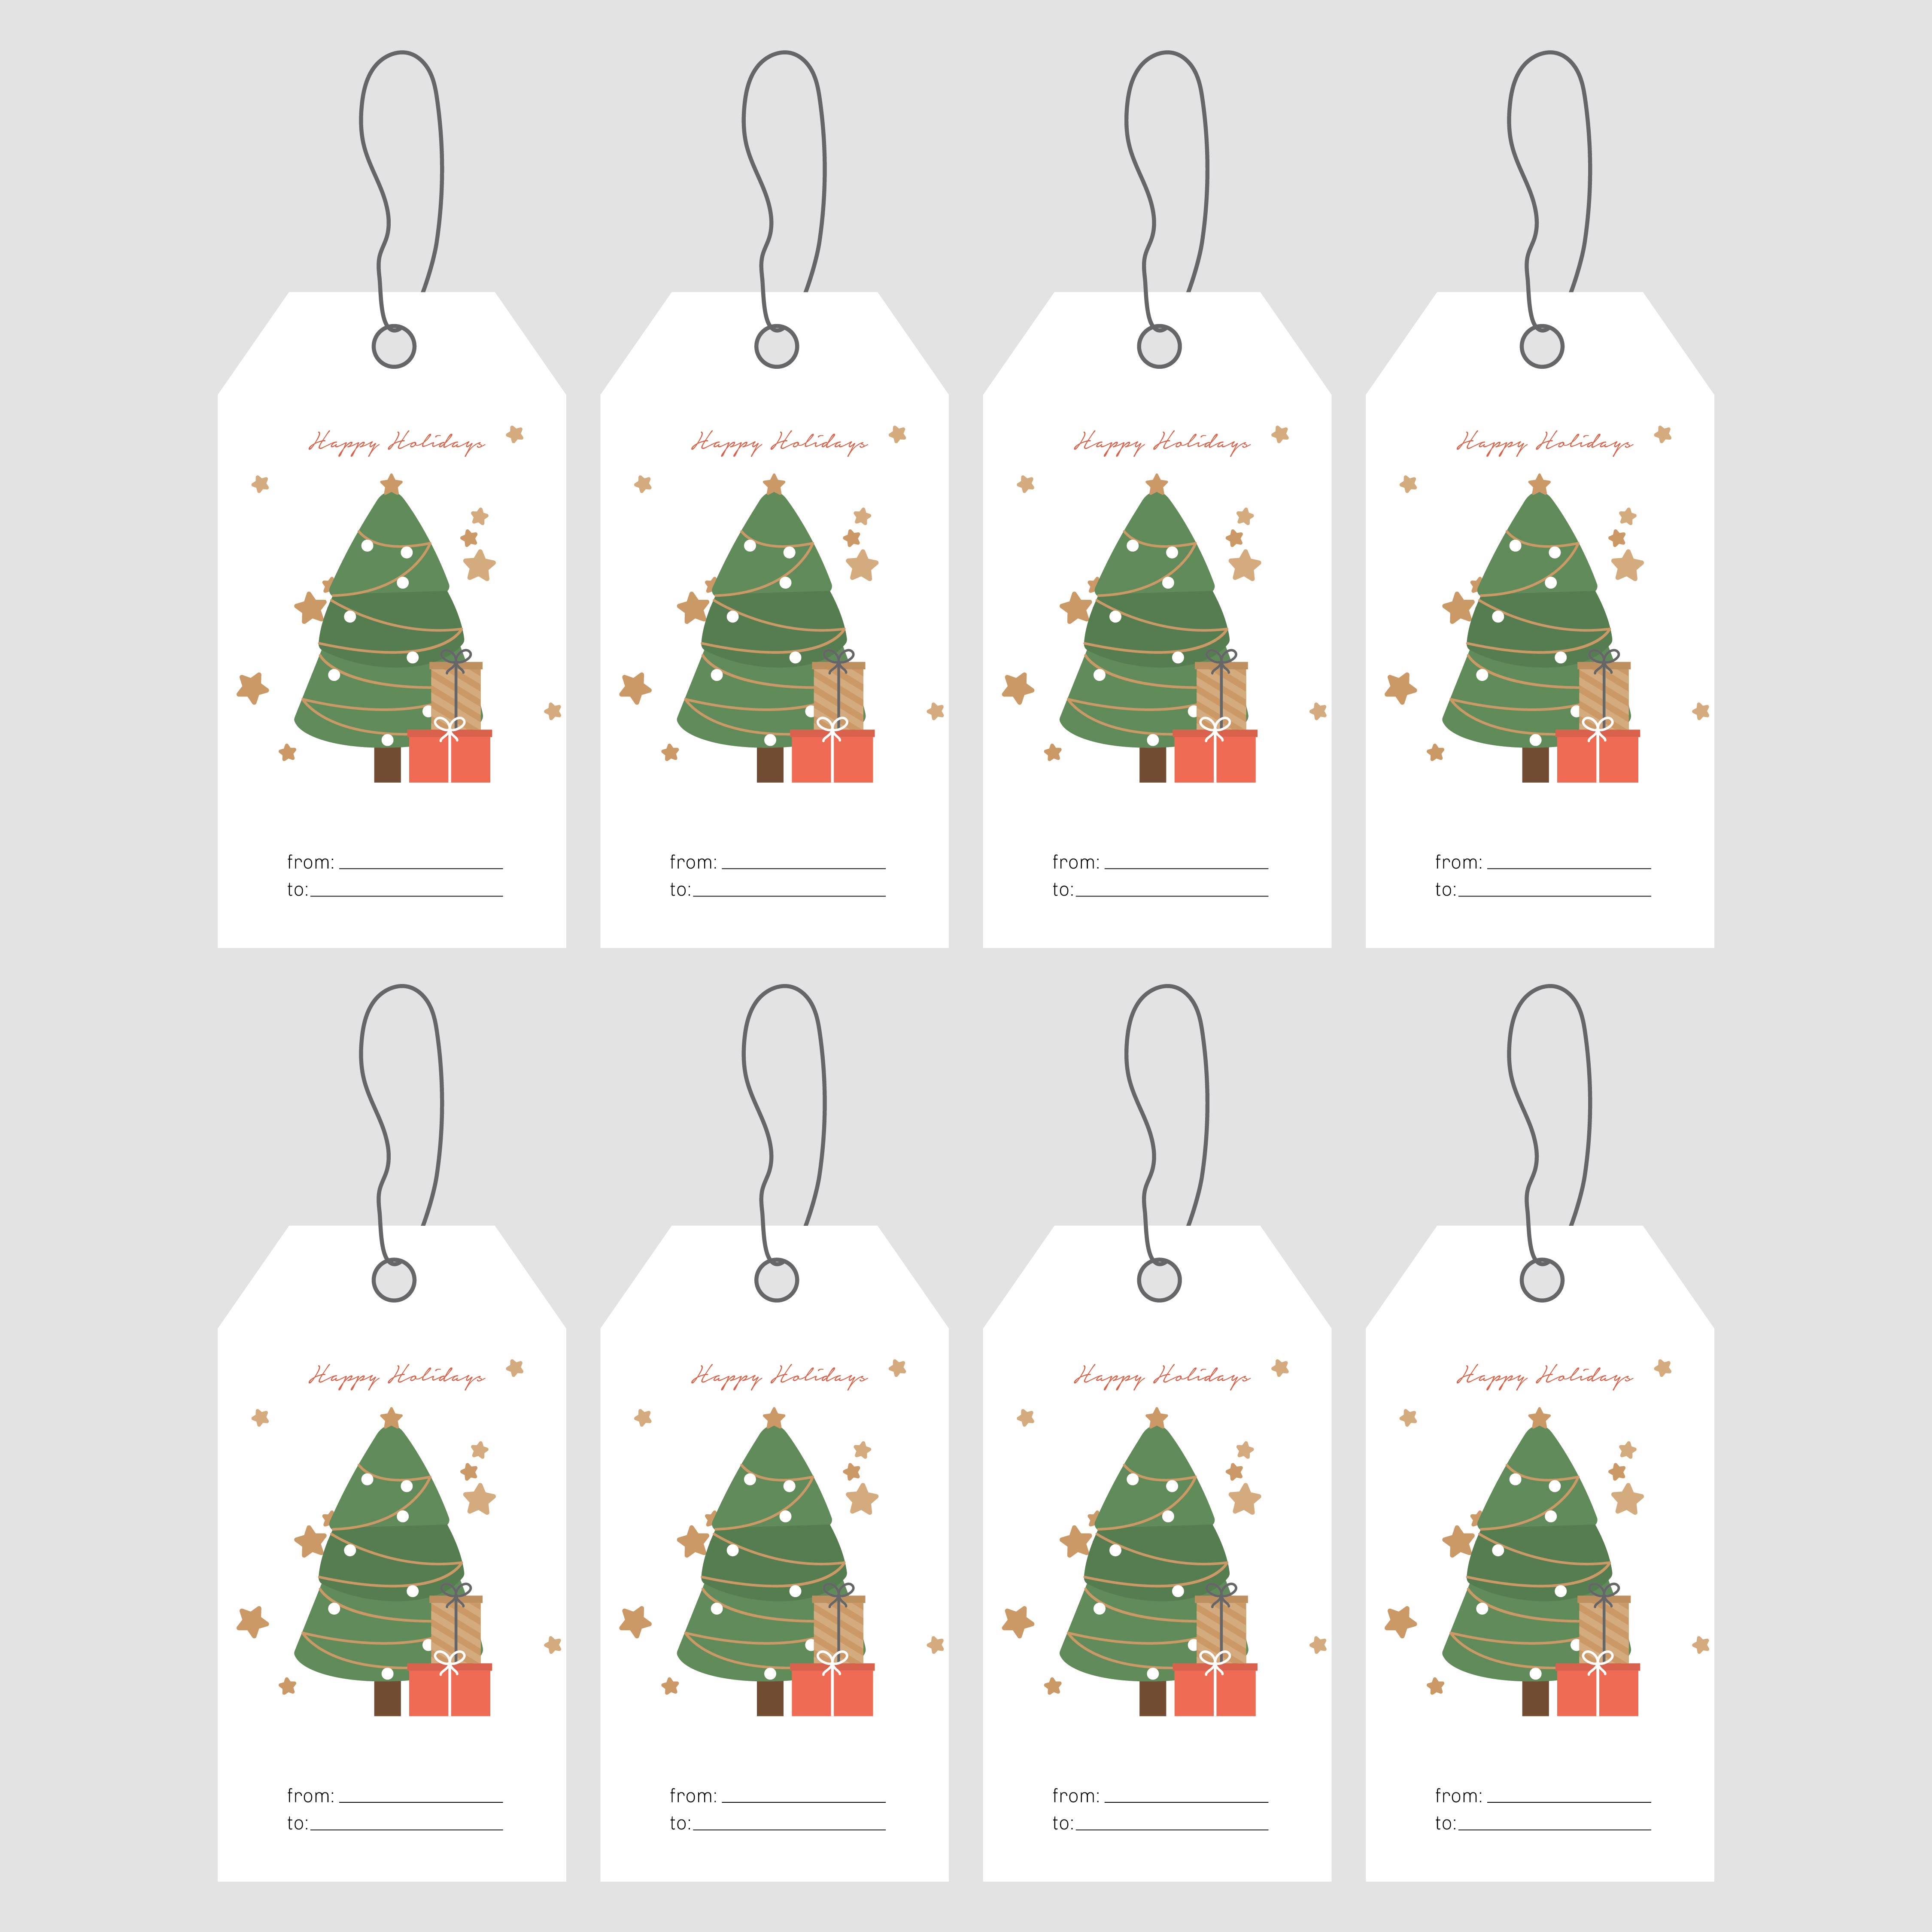 avery-printable-gift-tags-printable-world-holiday